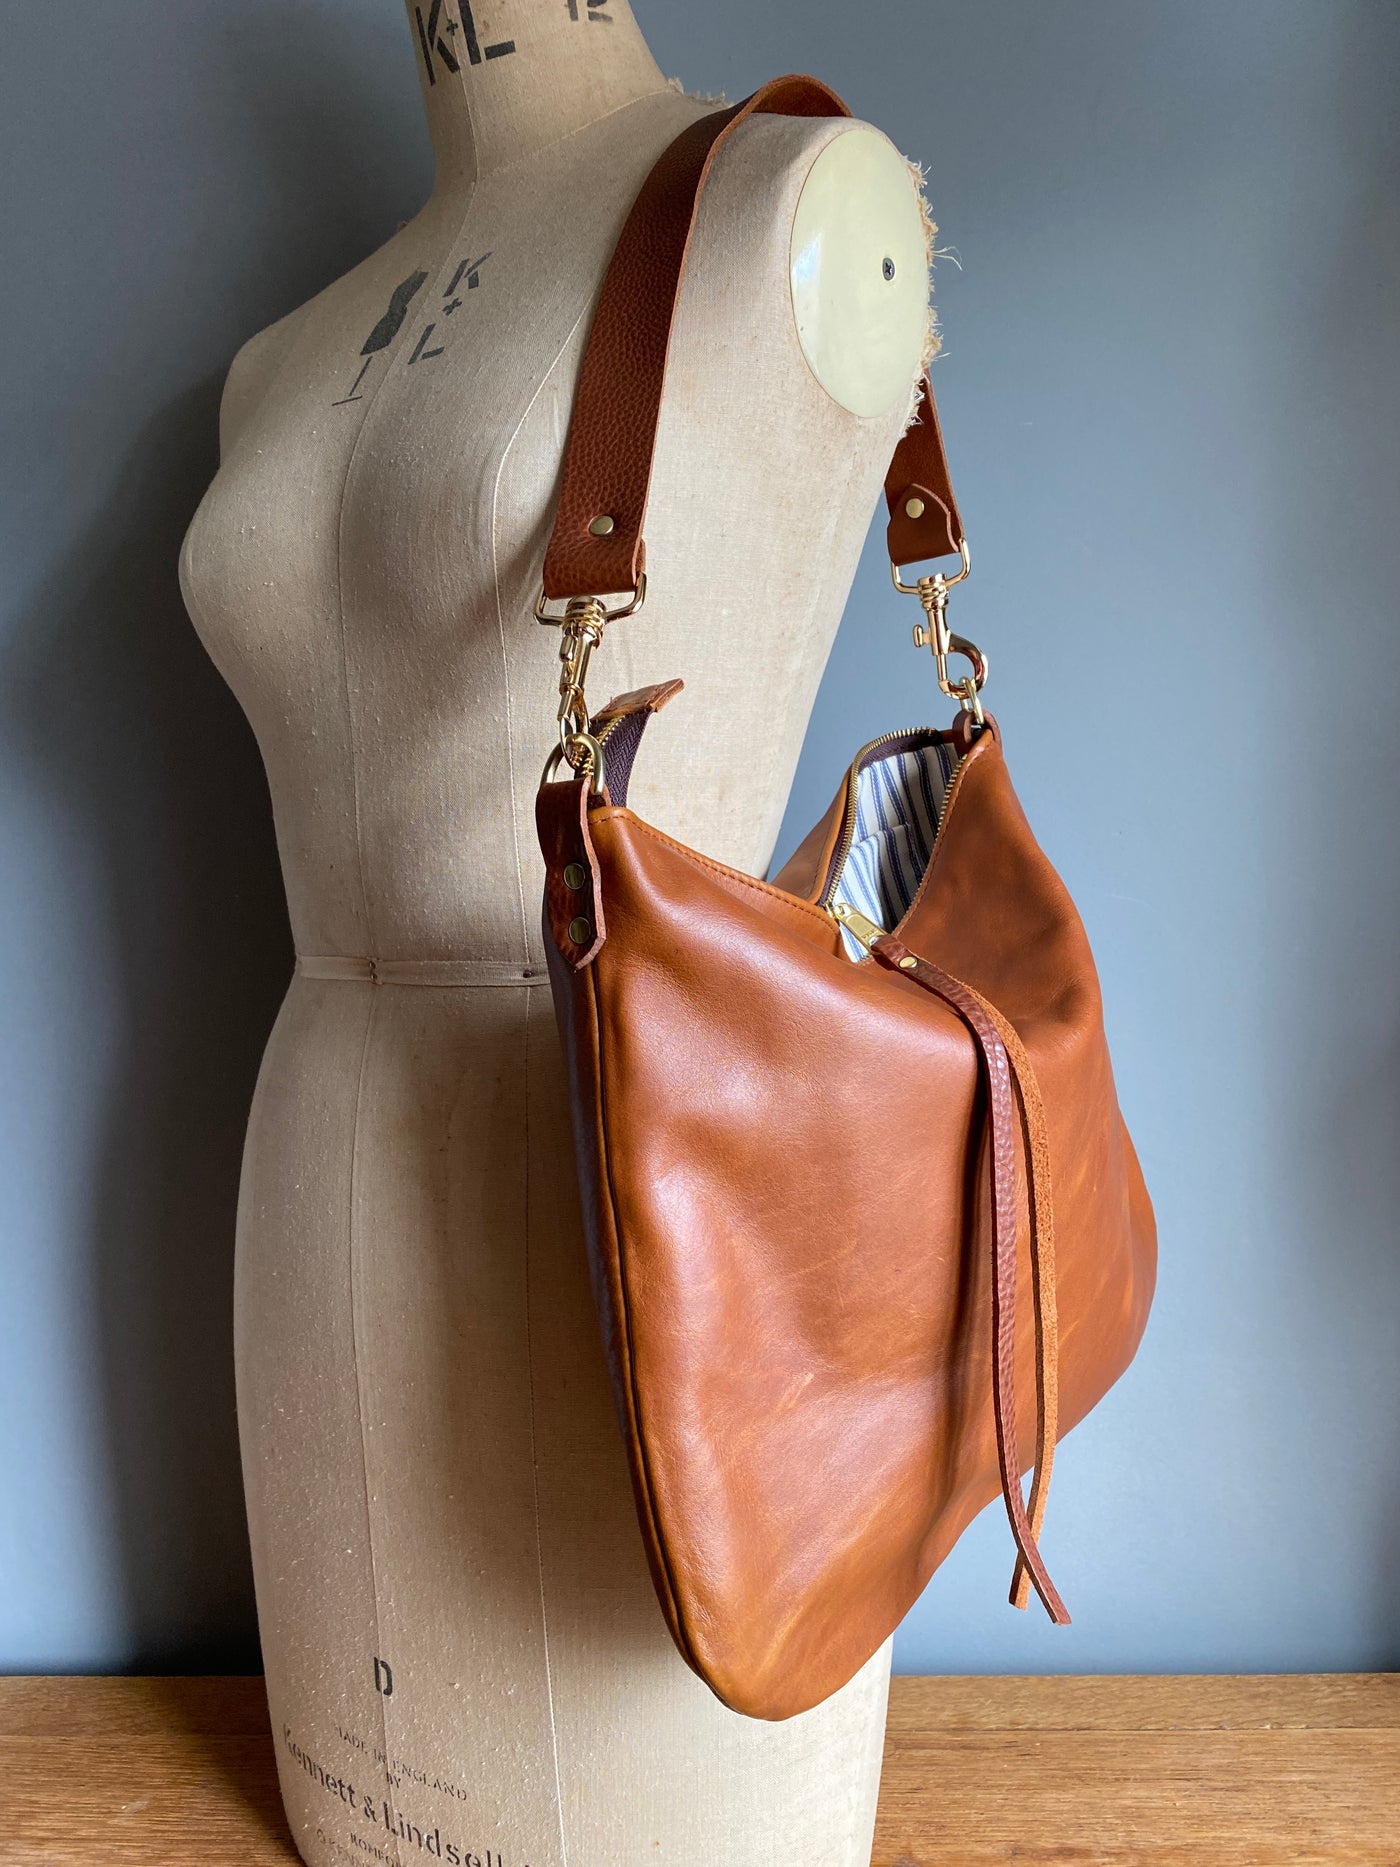 Large Leather Hobo Handbags Purse Shoulder Strap Vintage Bucket